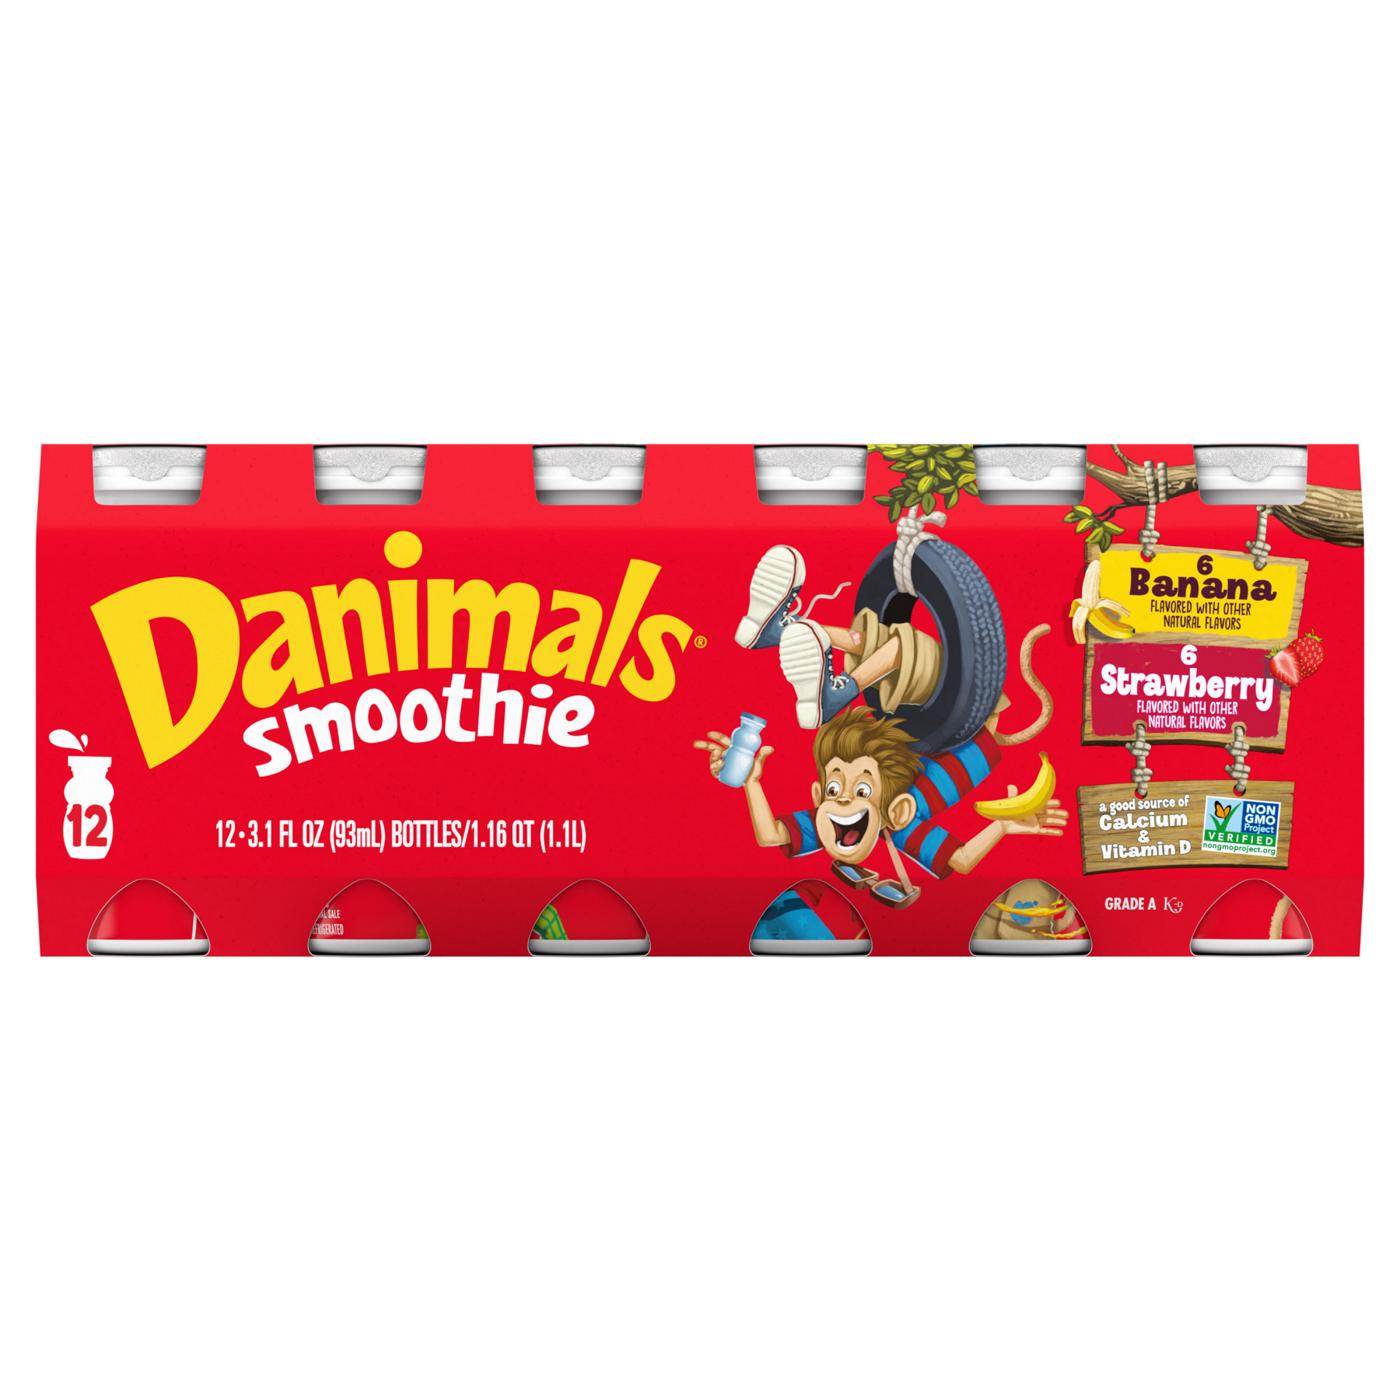 Danimals Strawberry & Banana Smoothie Variety Pack; image 1 of 2